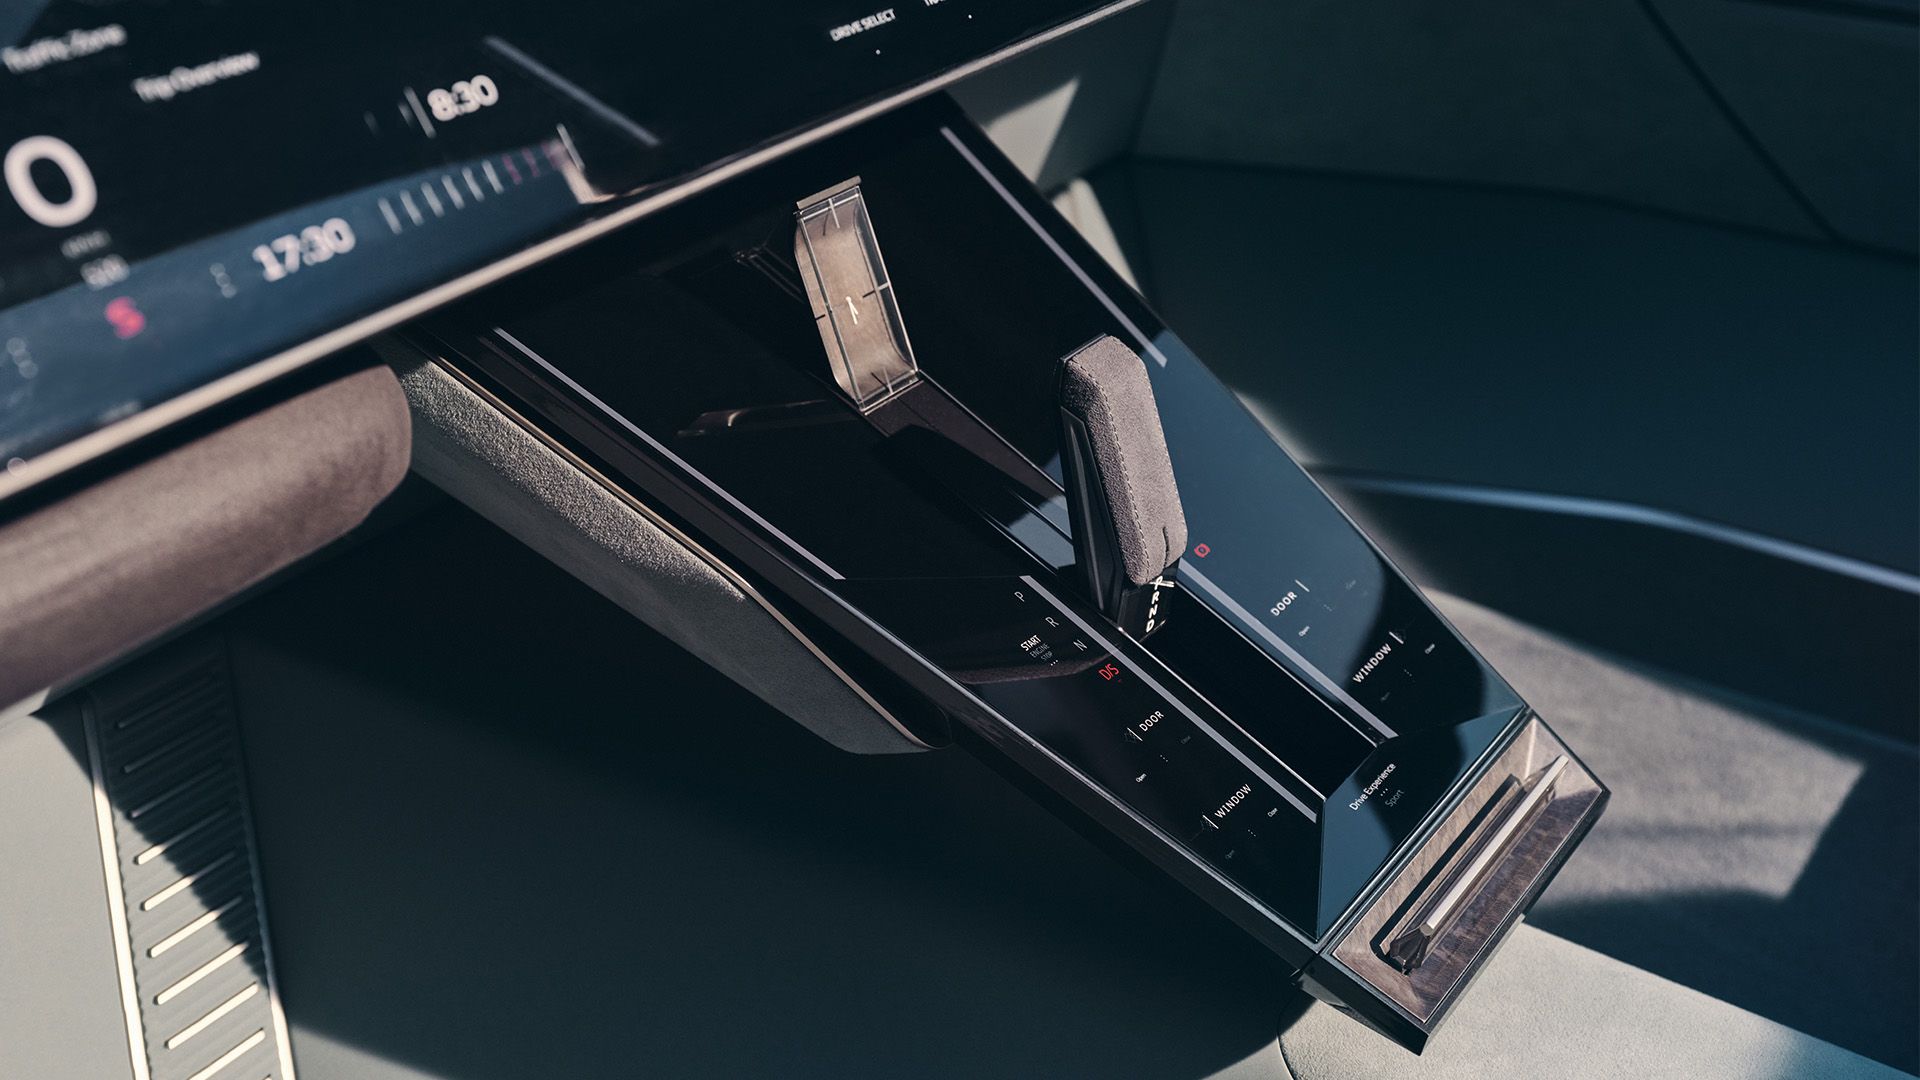 Audi skysphere concept otomobilin “Sports” modunda orta konsoldaki monitör paneli detayı ve kontrol elemanları.